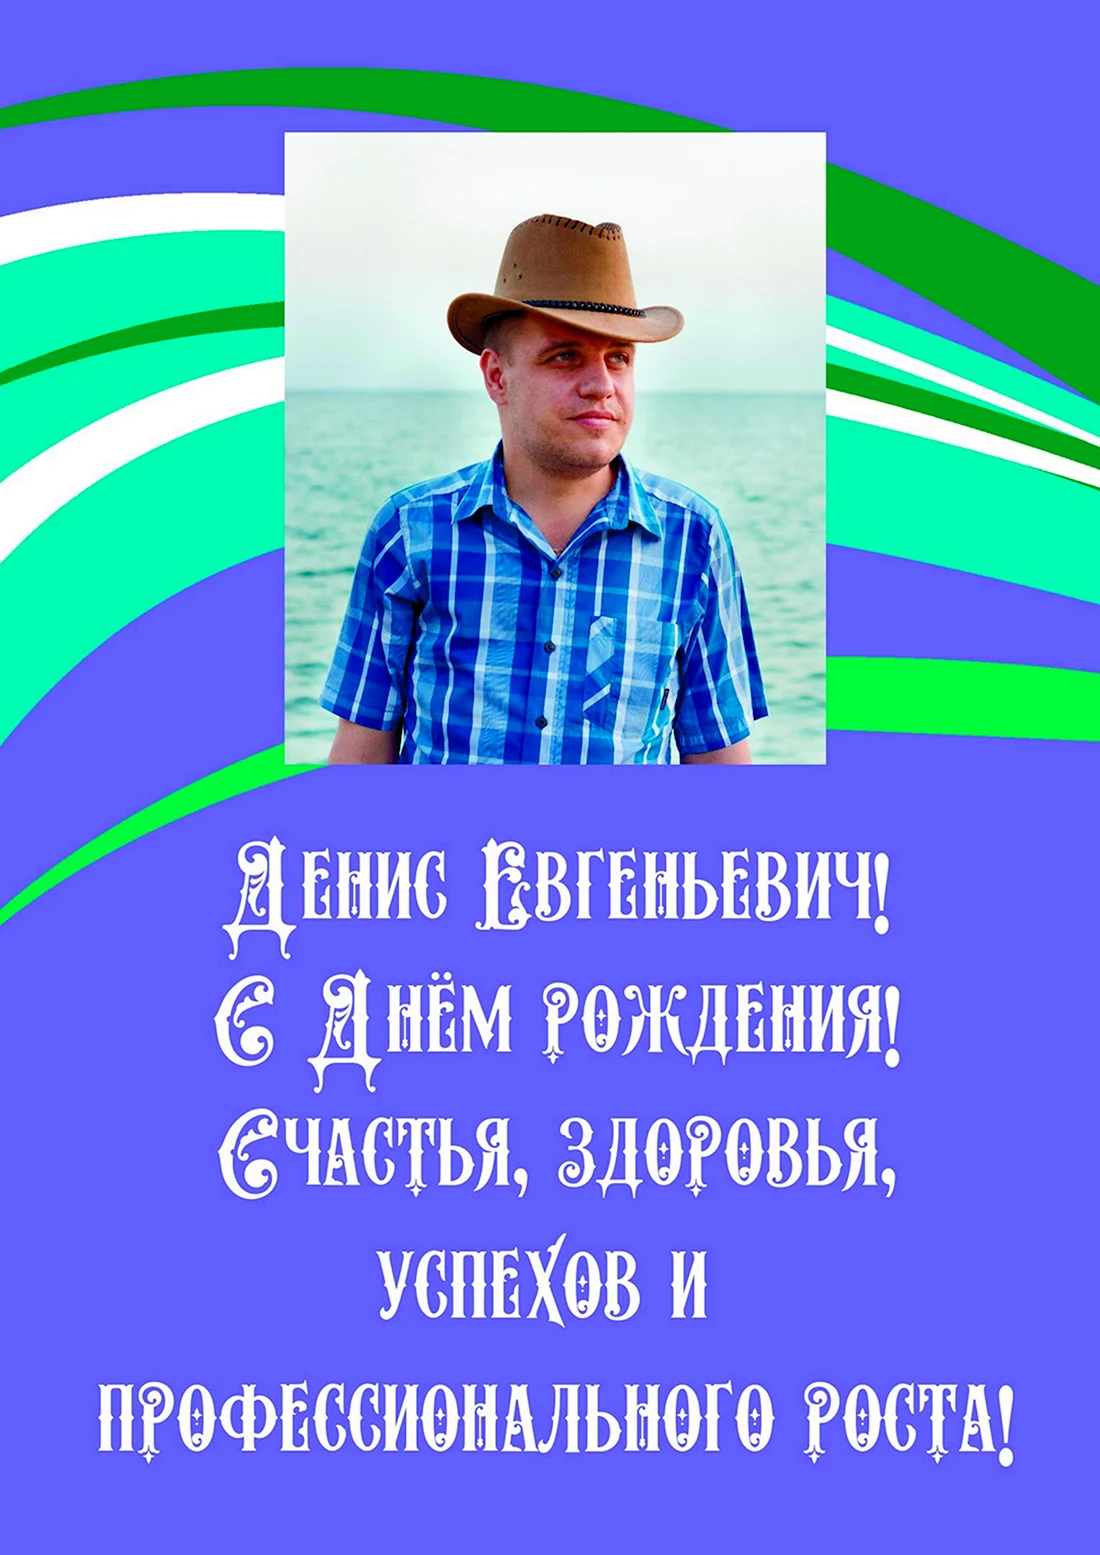 Поздравления с днём рождения Дениса Евгеньевича. Открытка с днем рождения